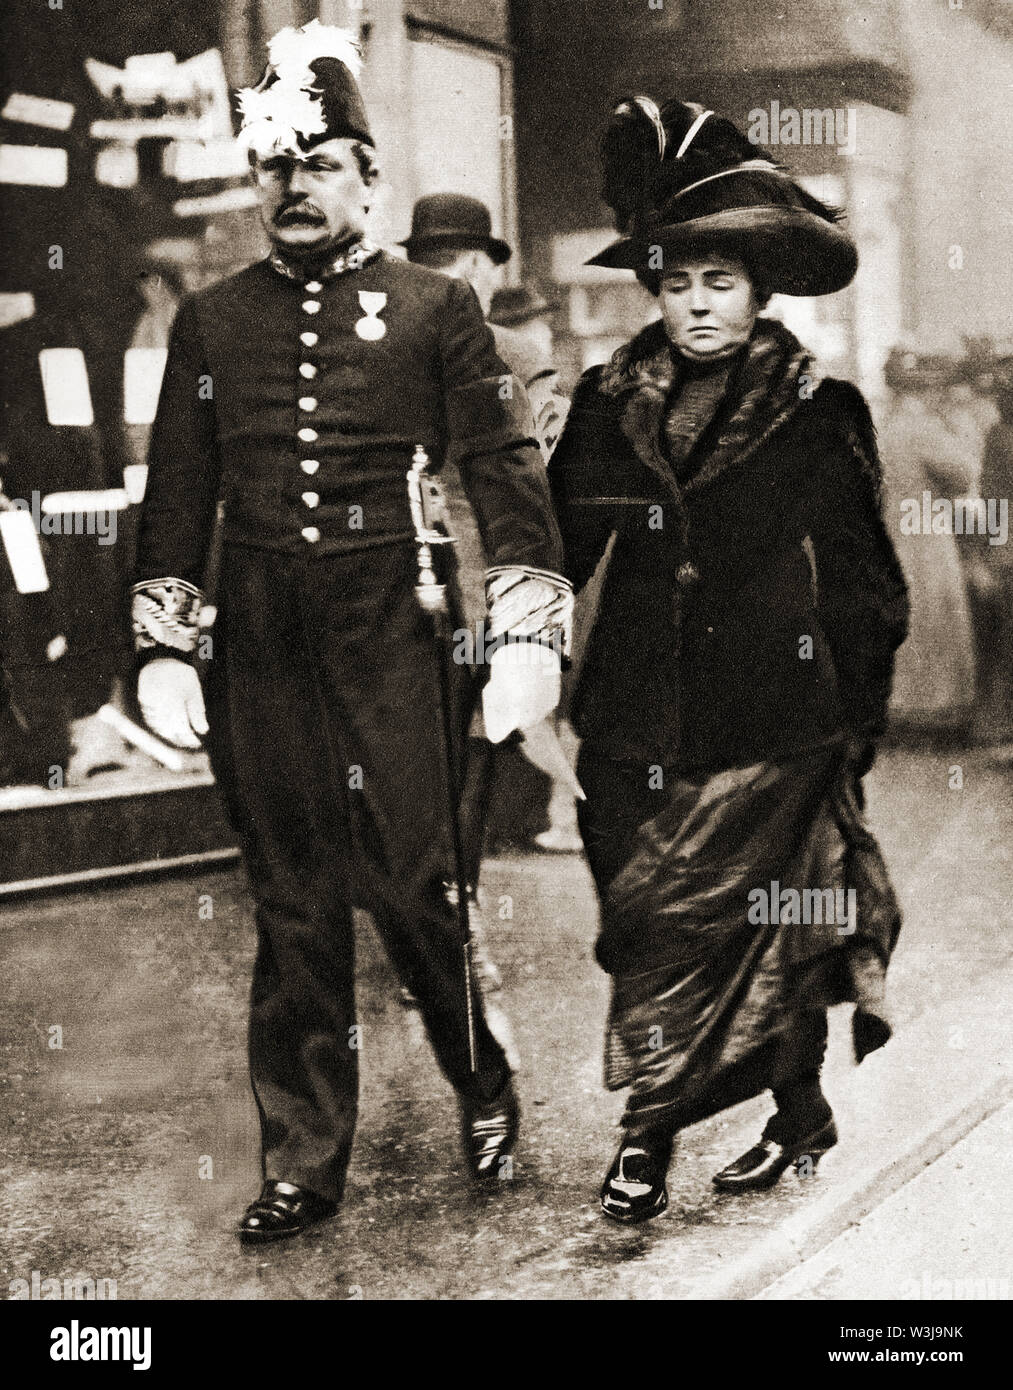 David Lloyd George, 1. Earl Lloyd-George von Dwyfor (1863-1945) - ein 1910 casual Street Foto von Lloyd George in einem formellen Uniform gekleidet, gehen Hand in Hand mit seiner Frau Margaret (Nee) Owen (1864-1941) Stockfoto